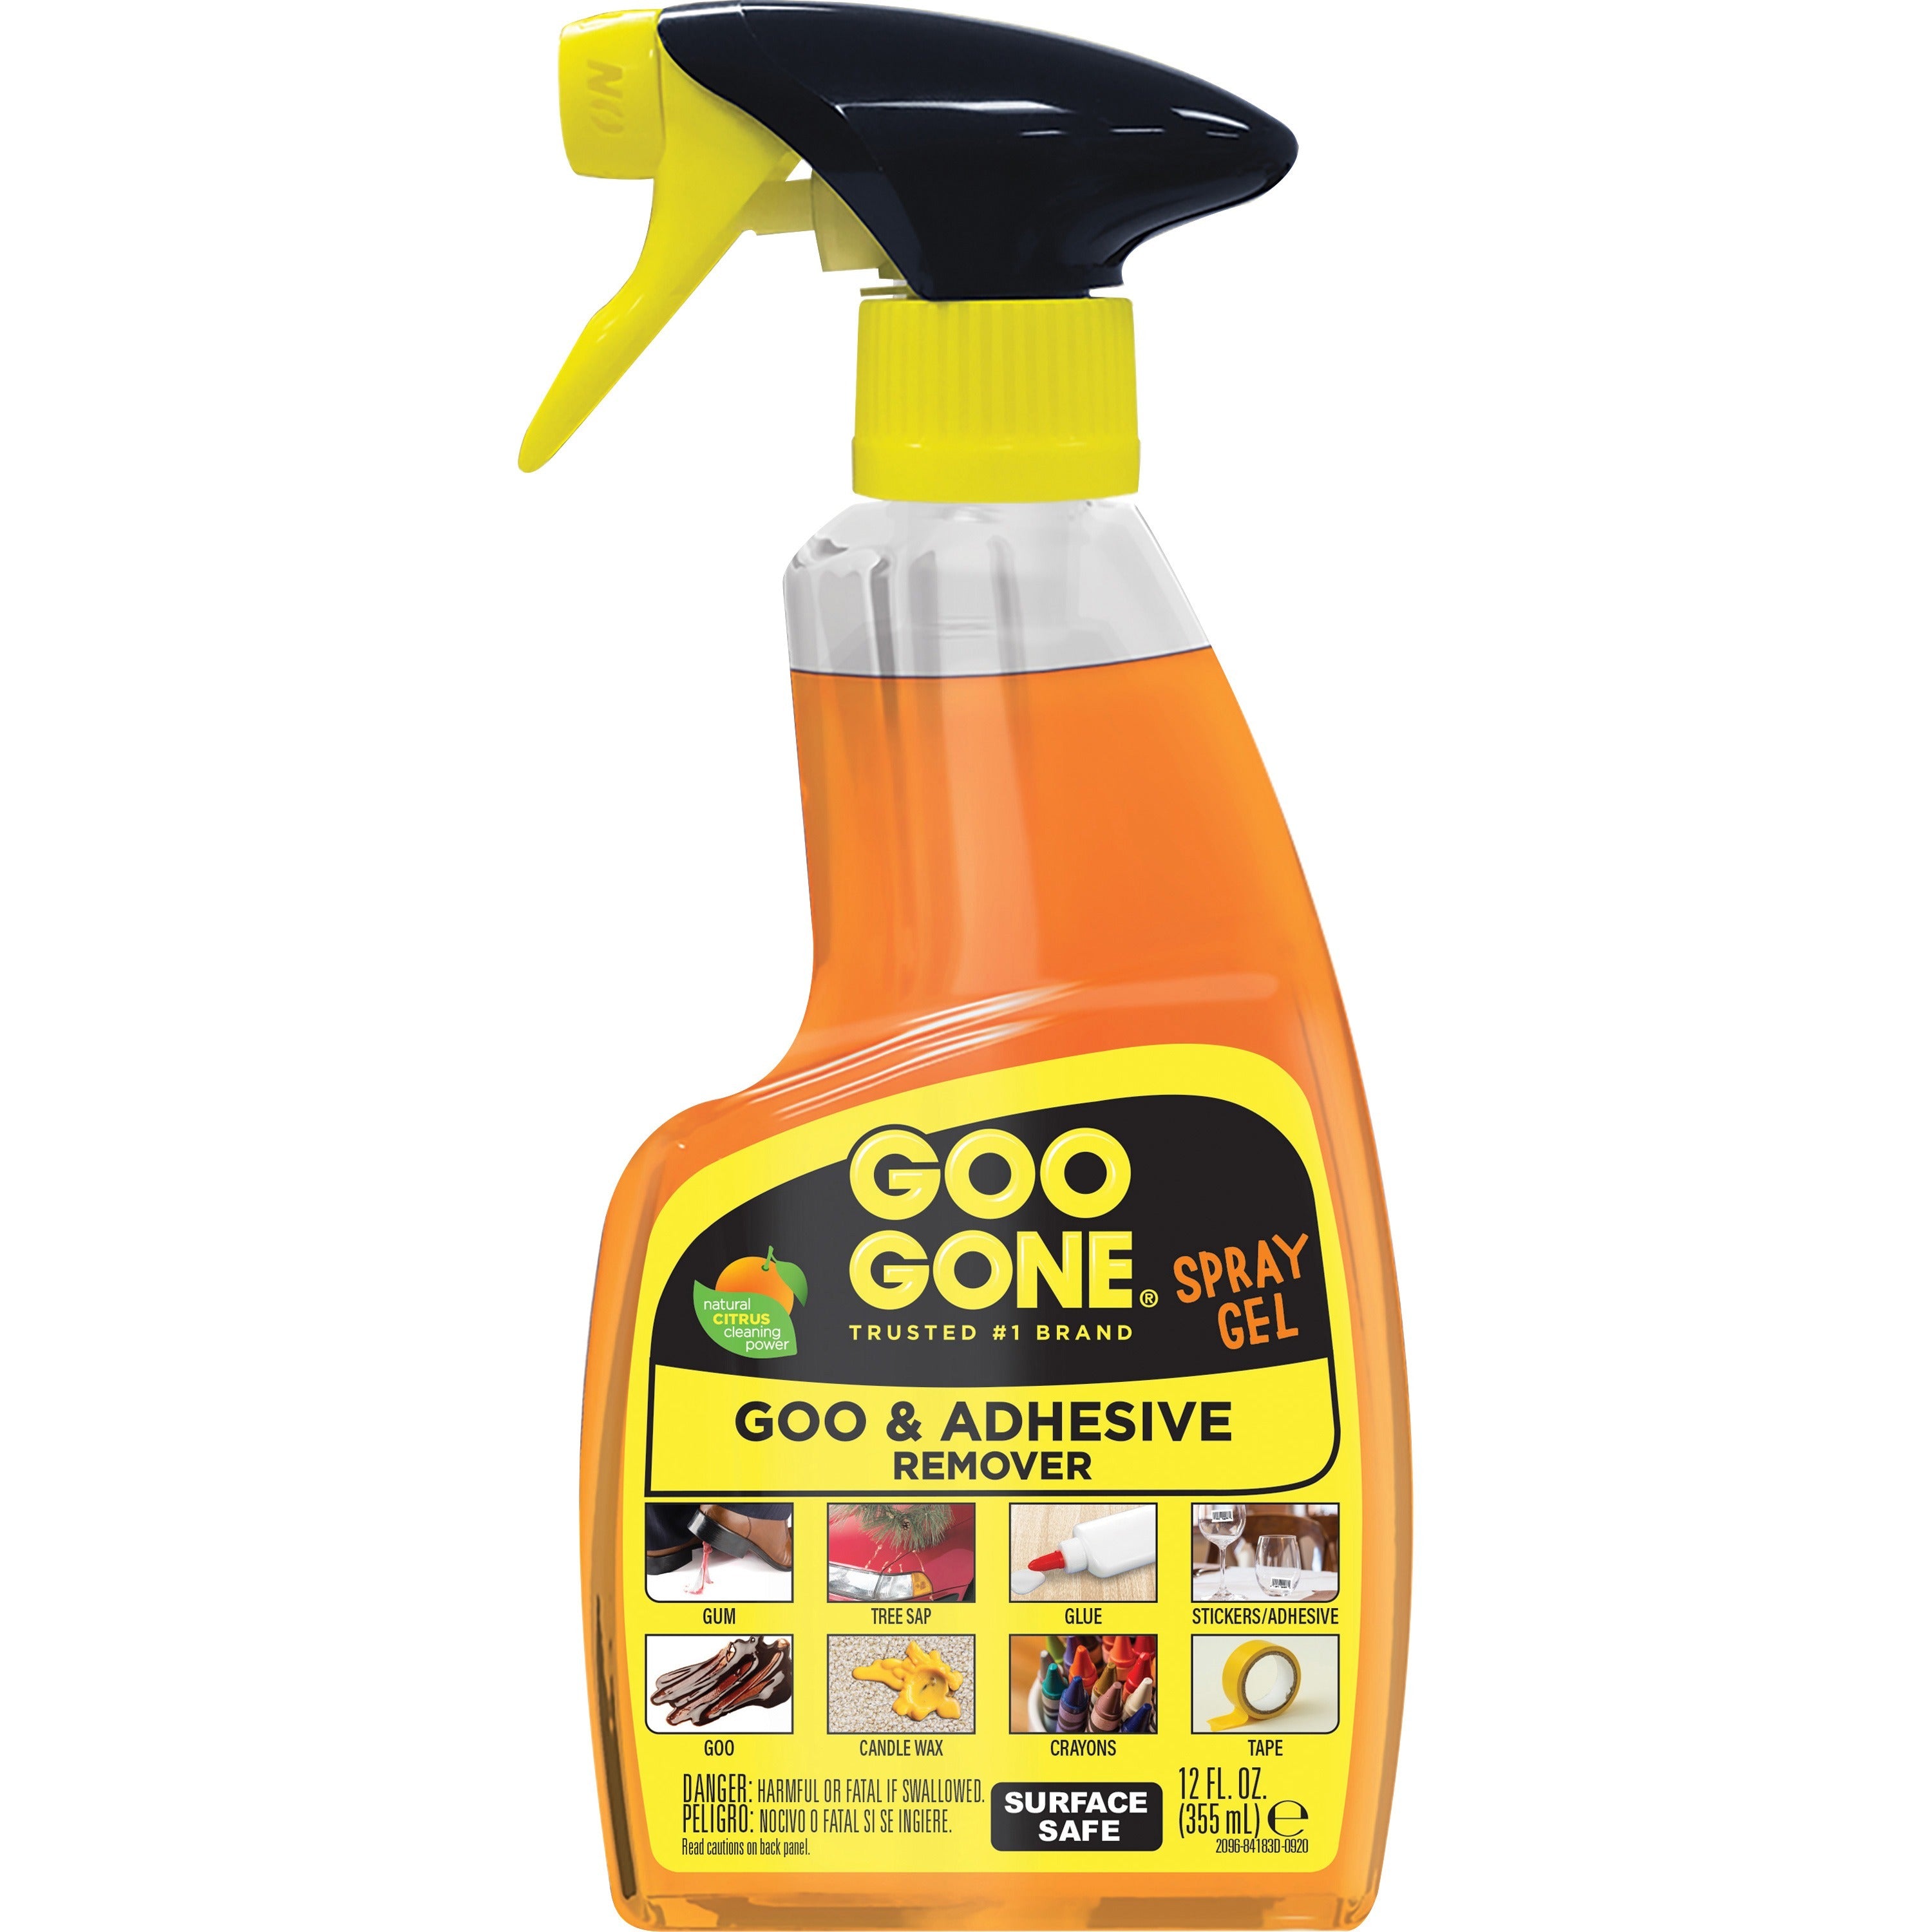 goo-gone-spray-gel-12-oz-075-lbbottle-6-carton-non-drip-orange_wmn2096ct - 2